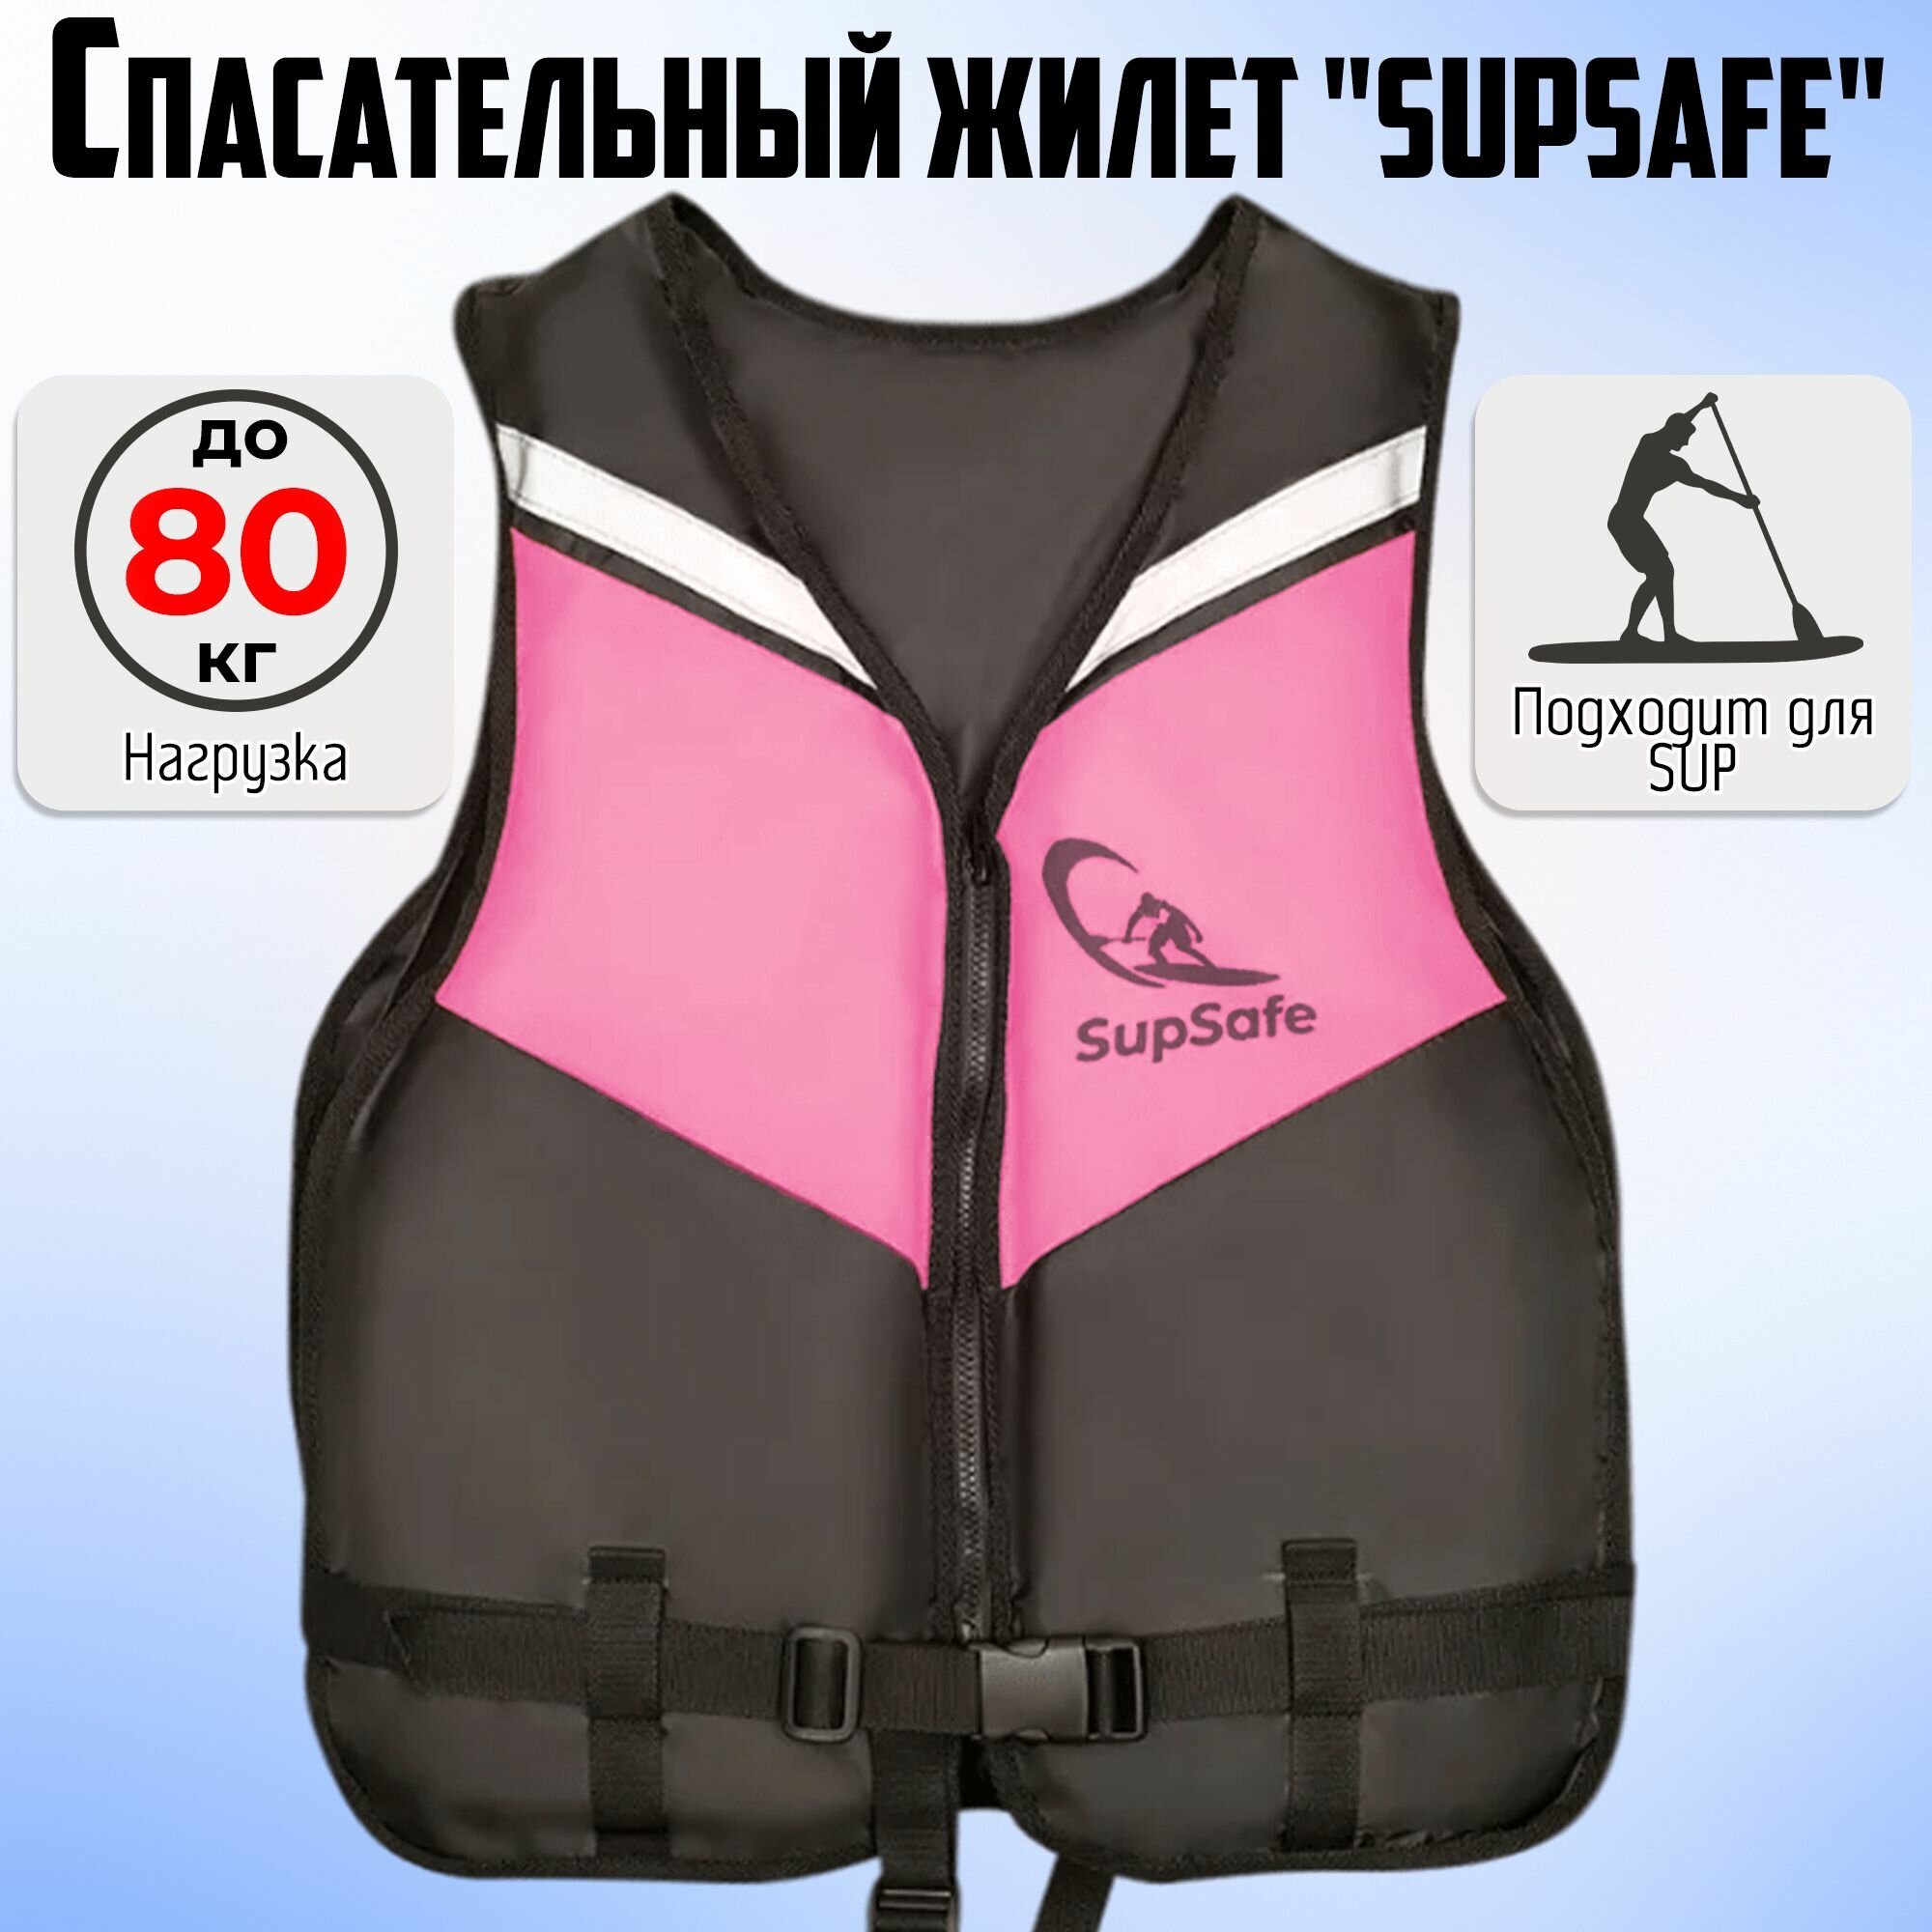 Спасательный жилет SupSafe до 80 кг, 46-48 черный; розовый